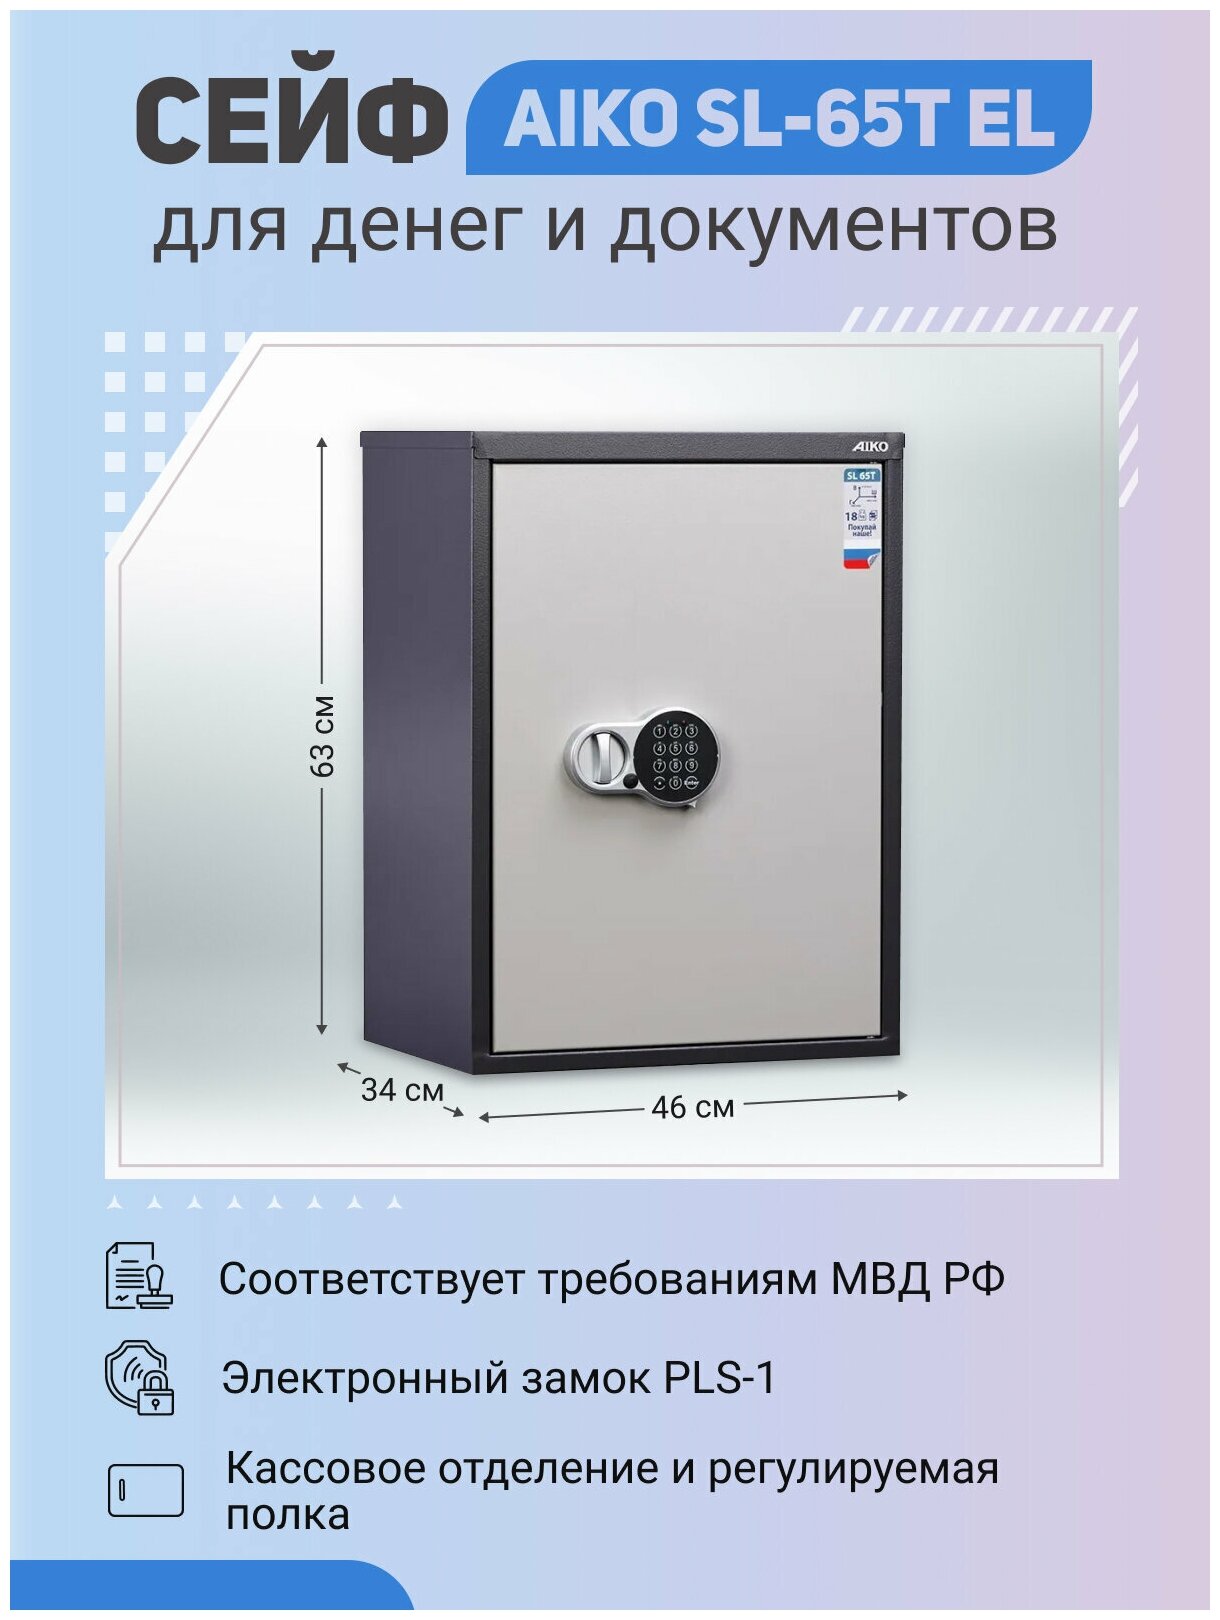 Офисный cейф для денег и документов AIKO SL-65T EL 630x460x340 мм с электронным замком и трейзером